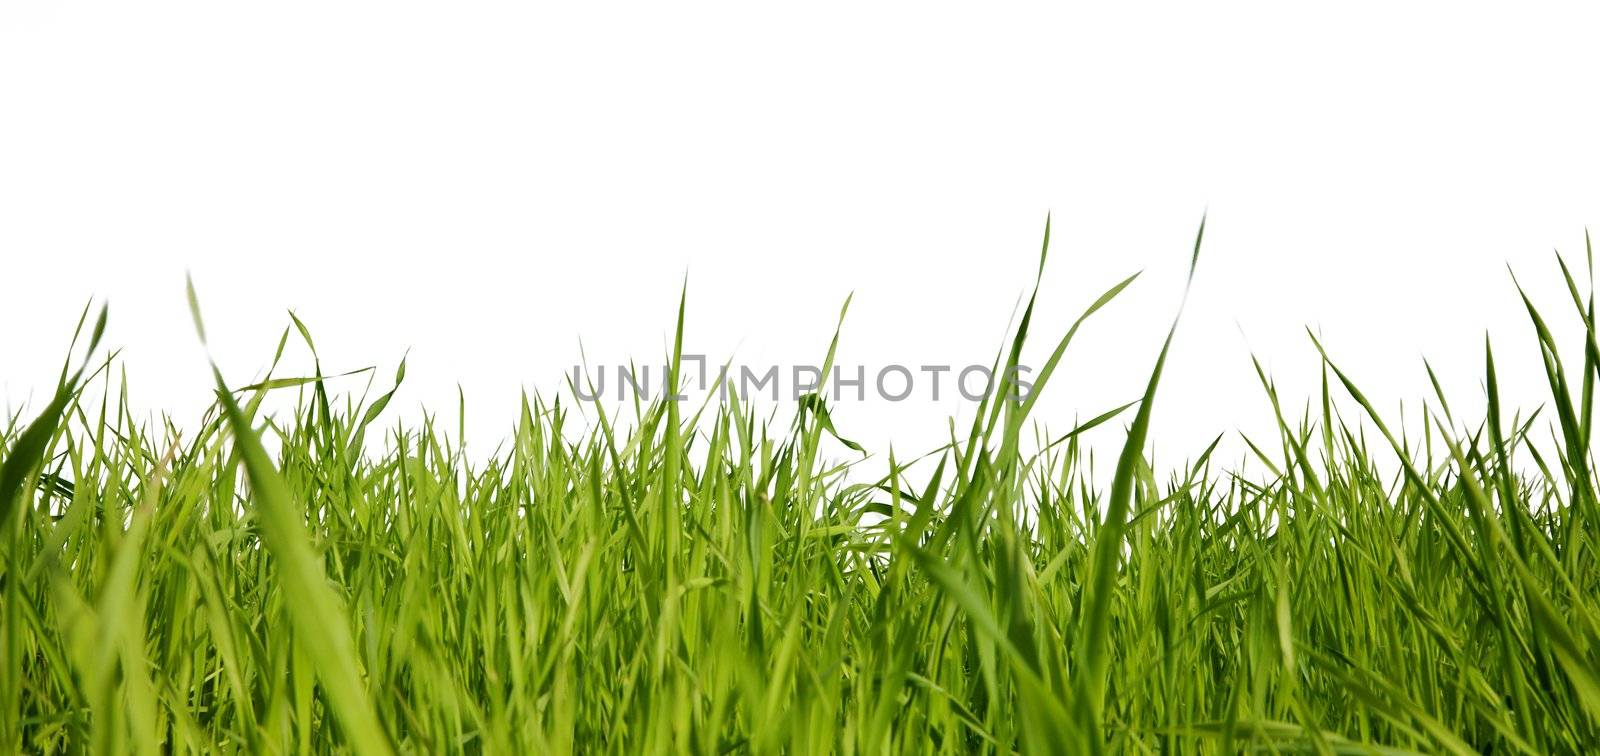 Green grass by pzaxe